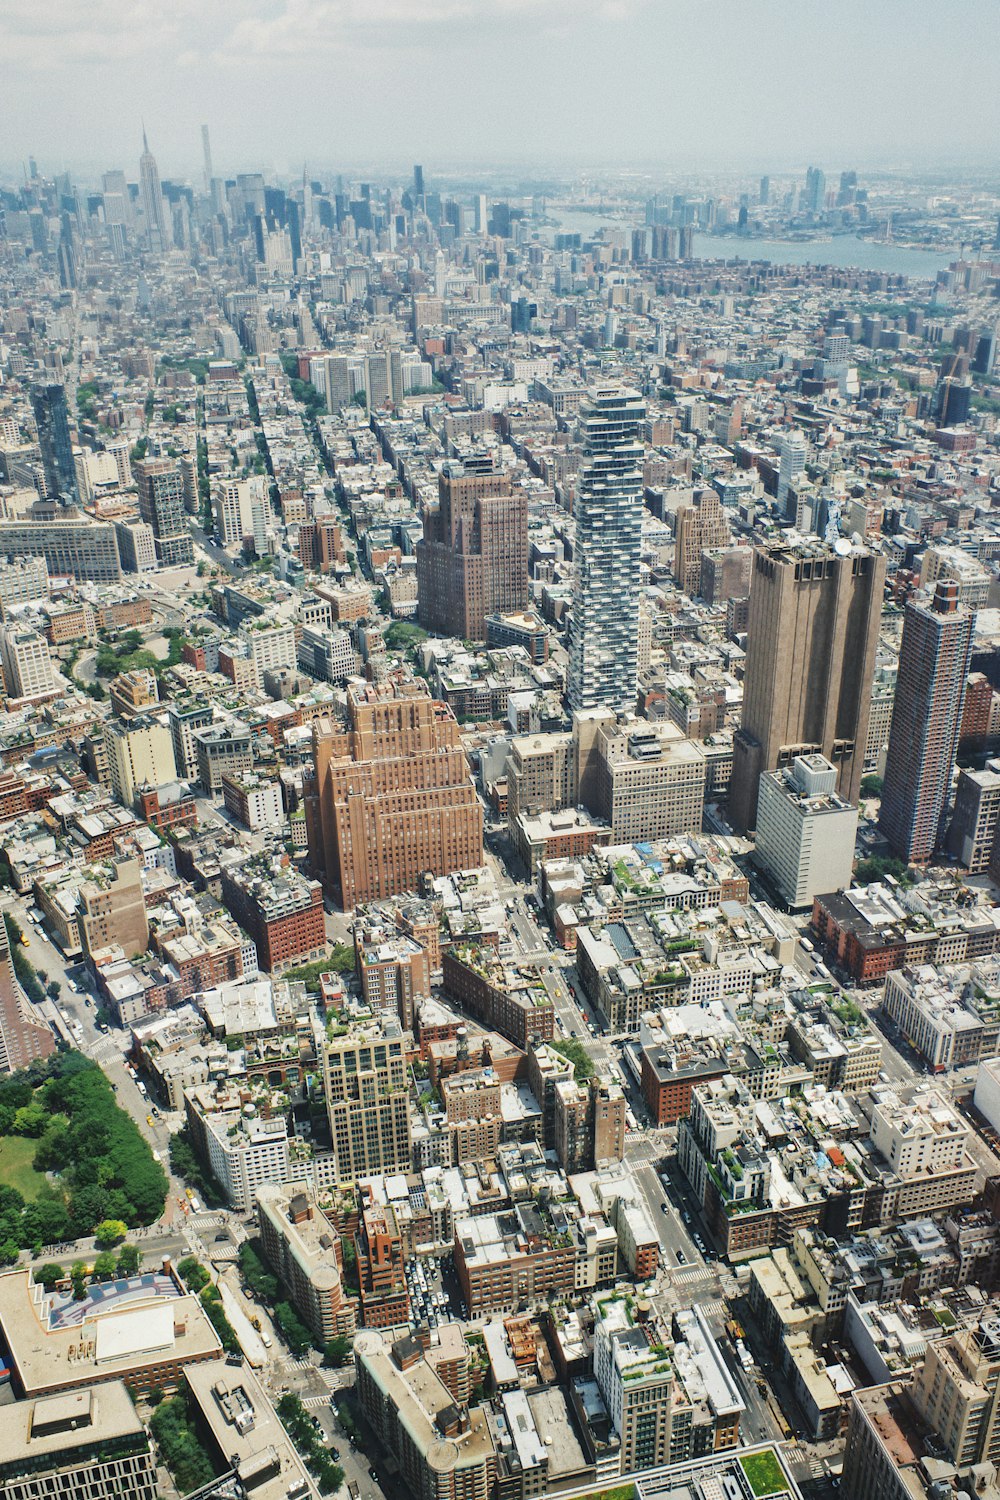 veduta aerea della città durante il giorno